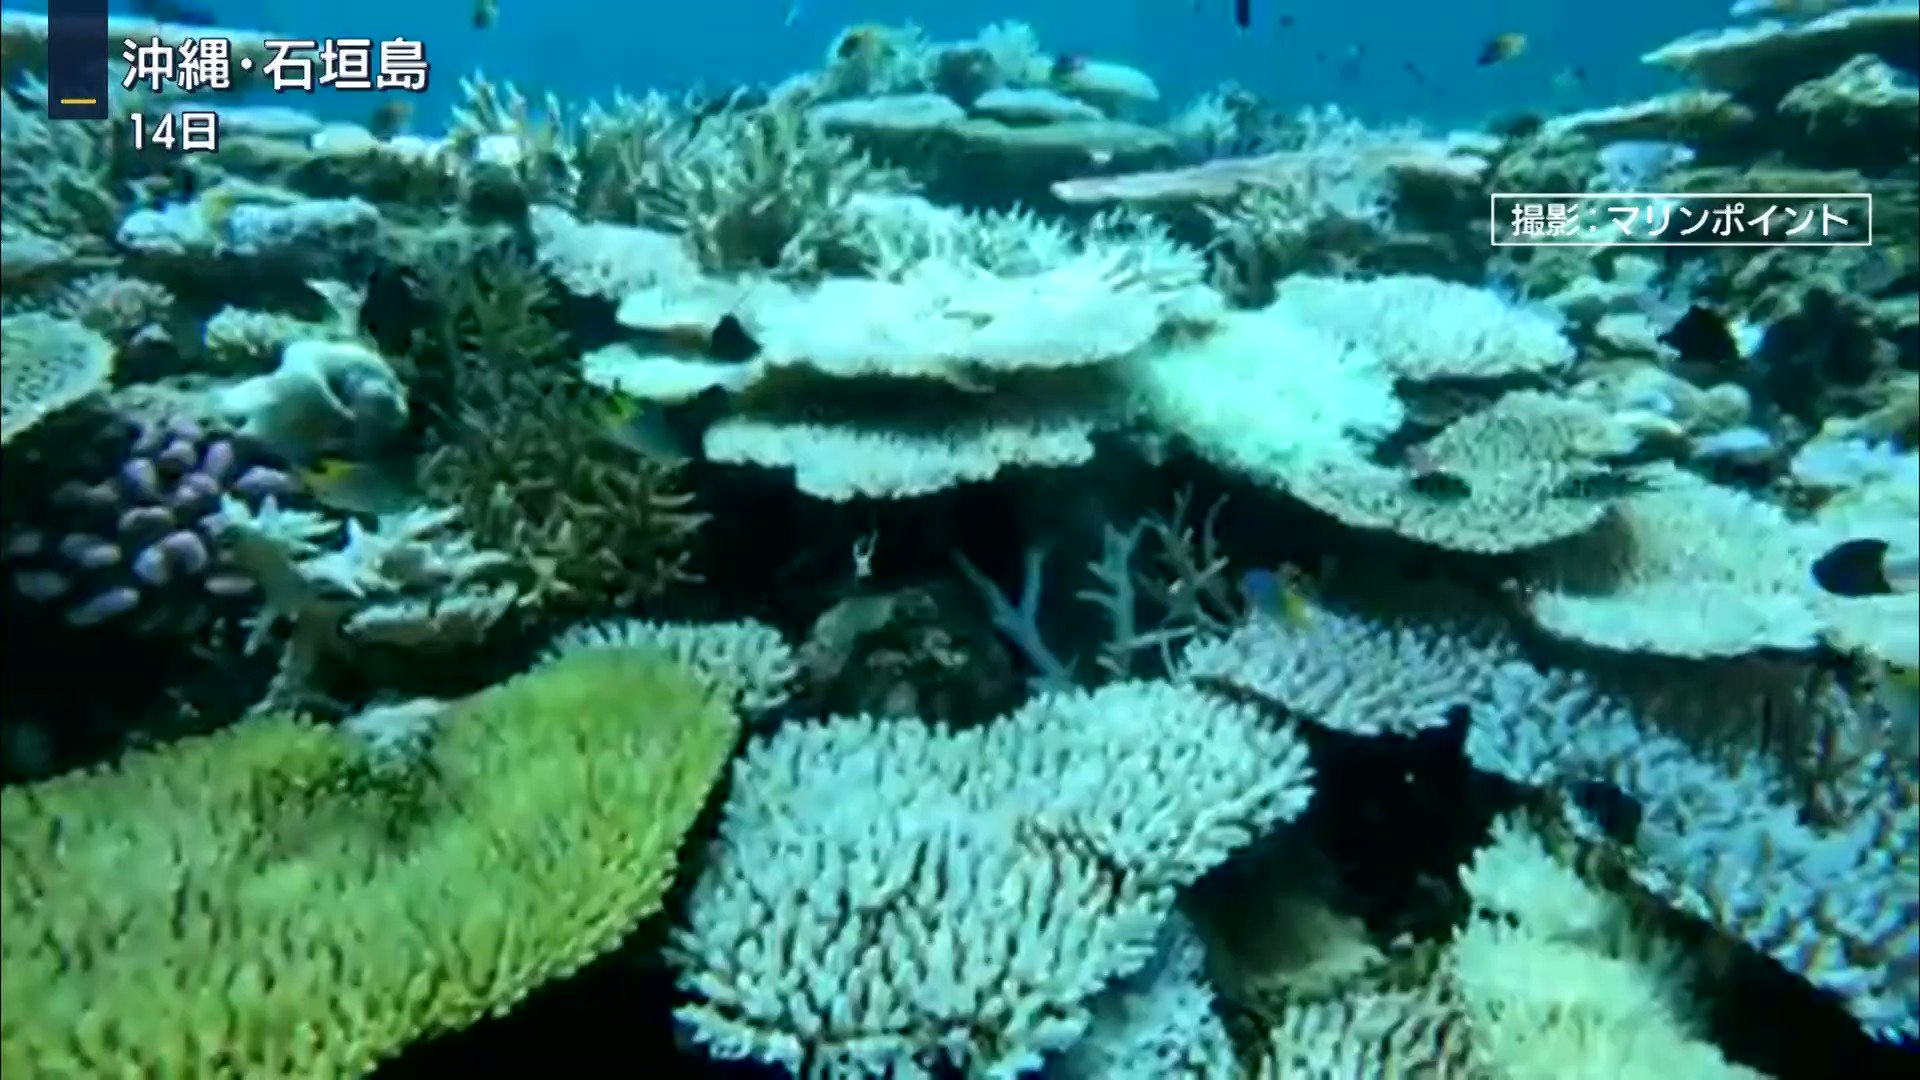 沖縄の海に異変 進むサンゴの 白化現象 原因は Twitter